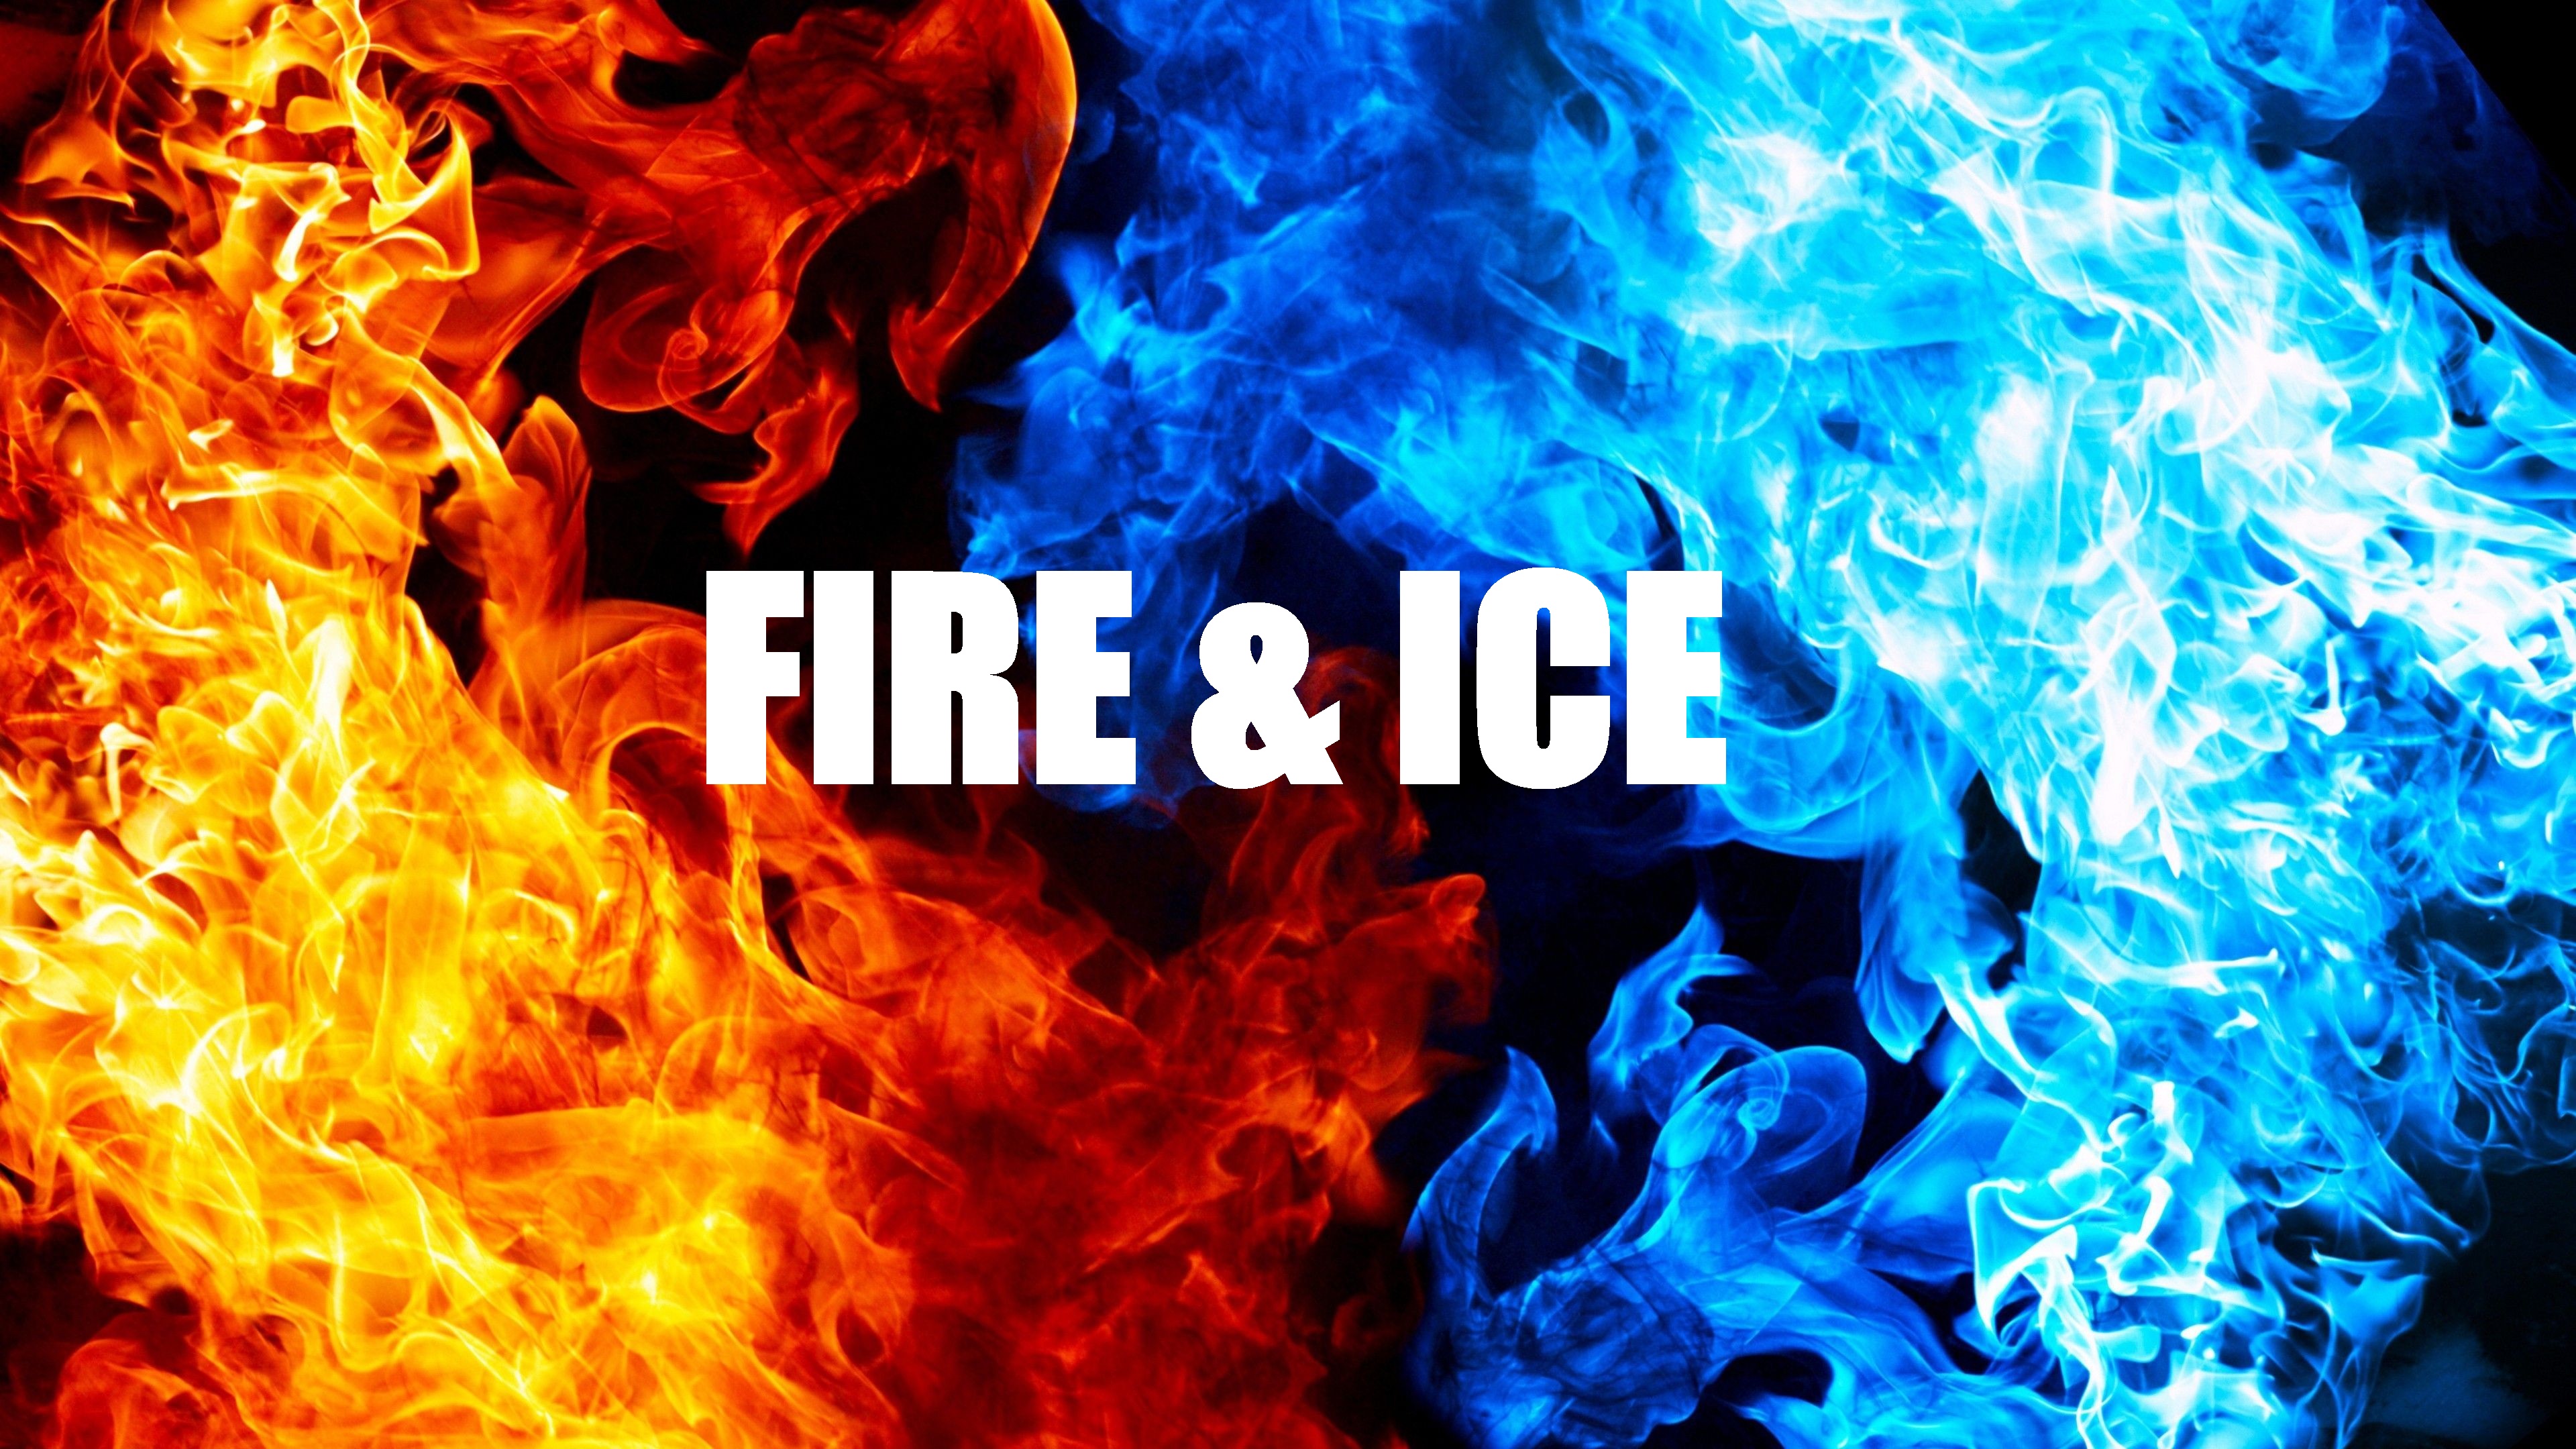 Файер айс. Огонь и лед. Картинки огонь и лед. Айс фаер. Fire and Ice логотип.